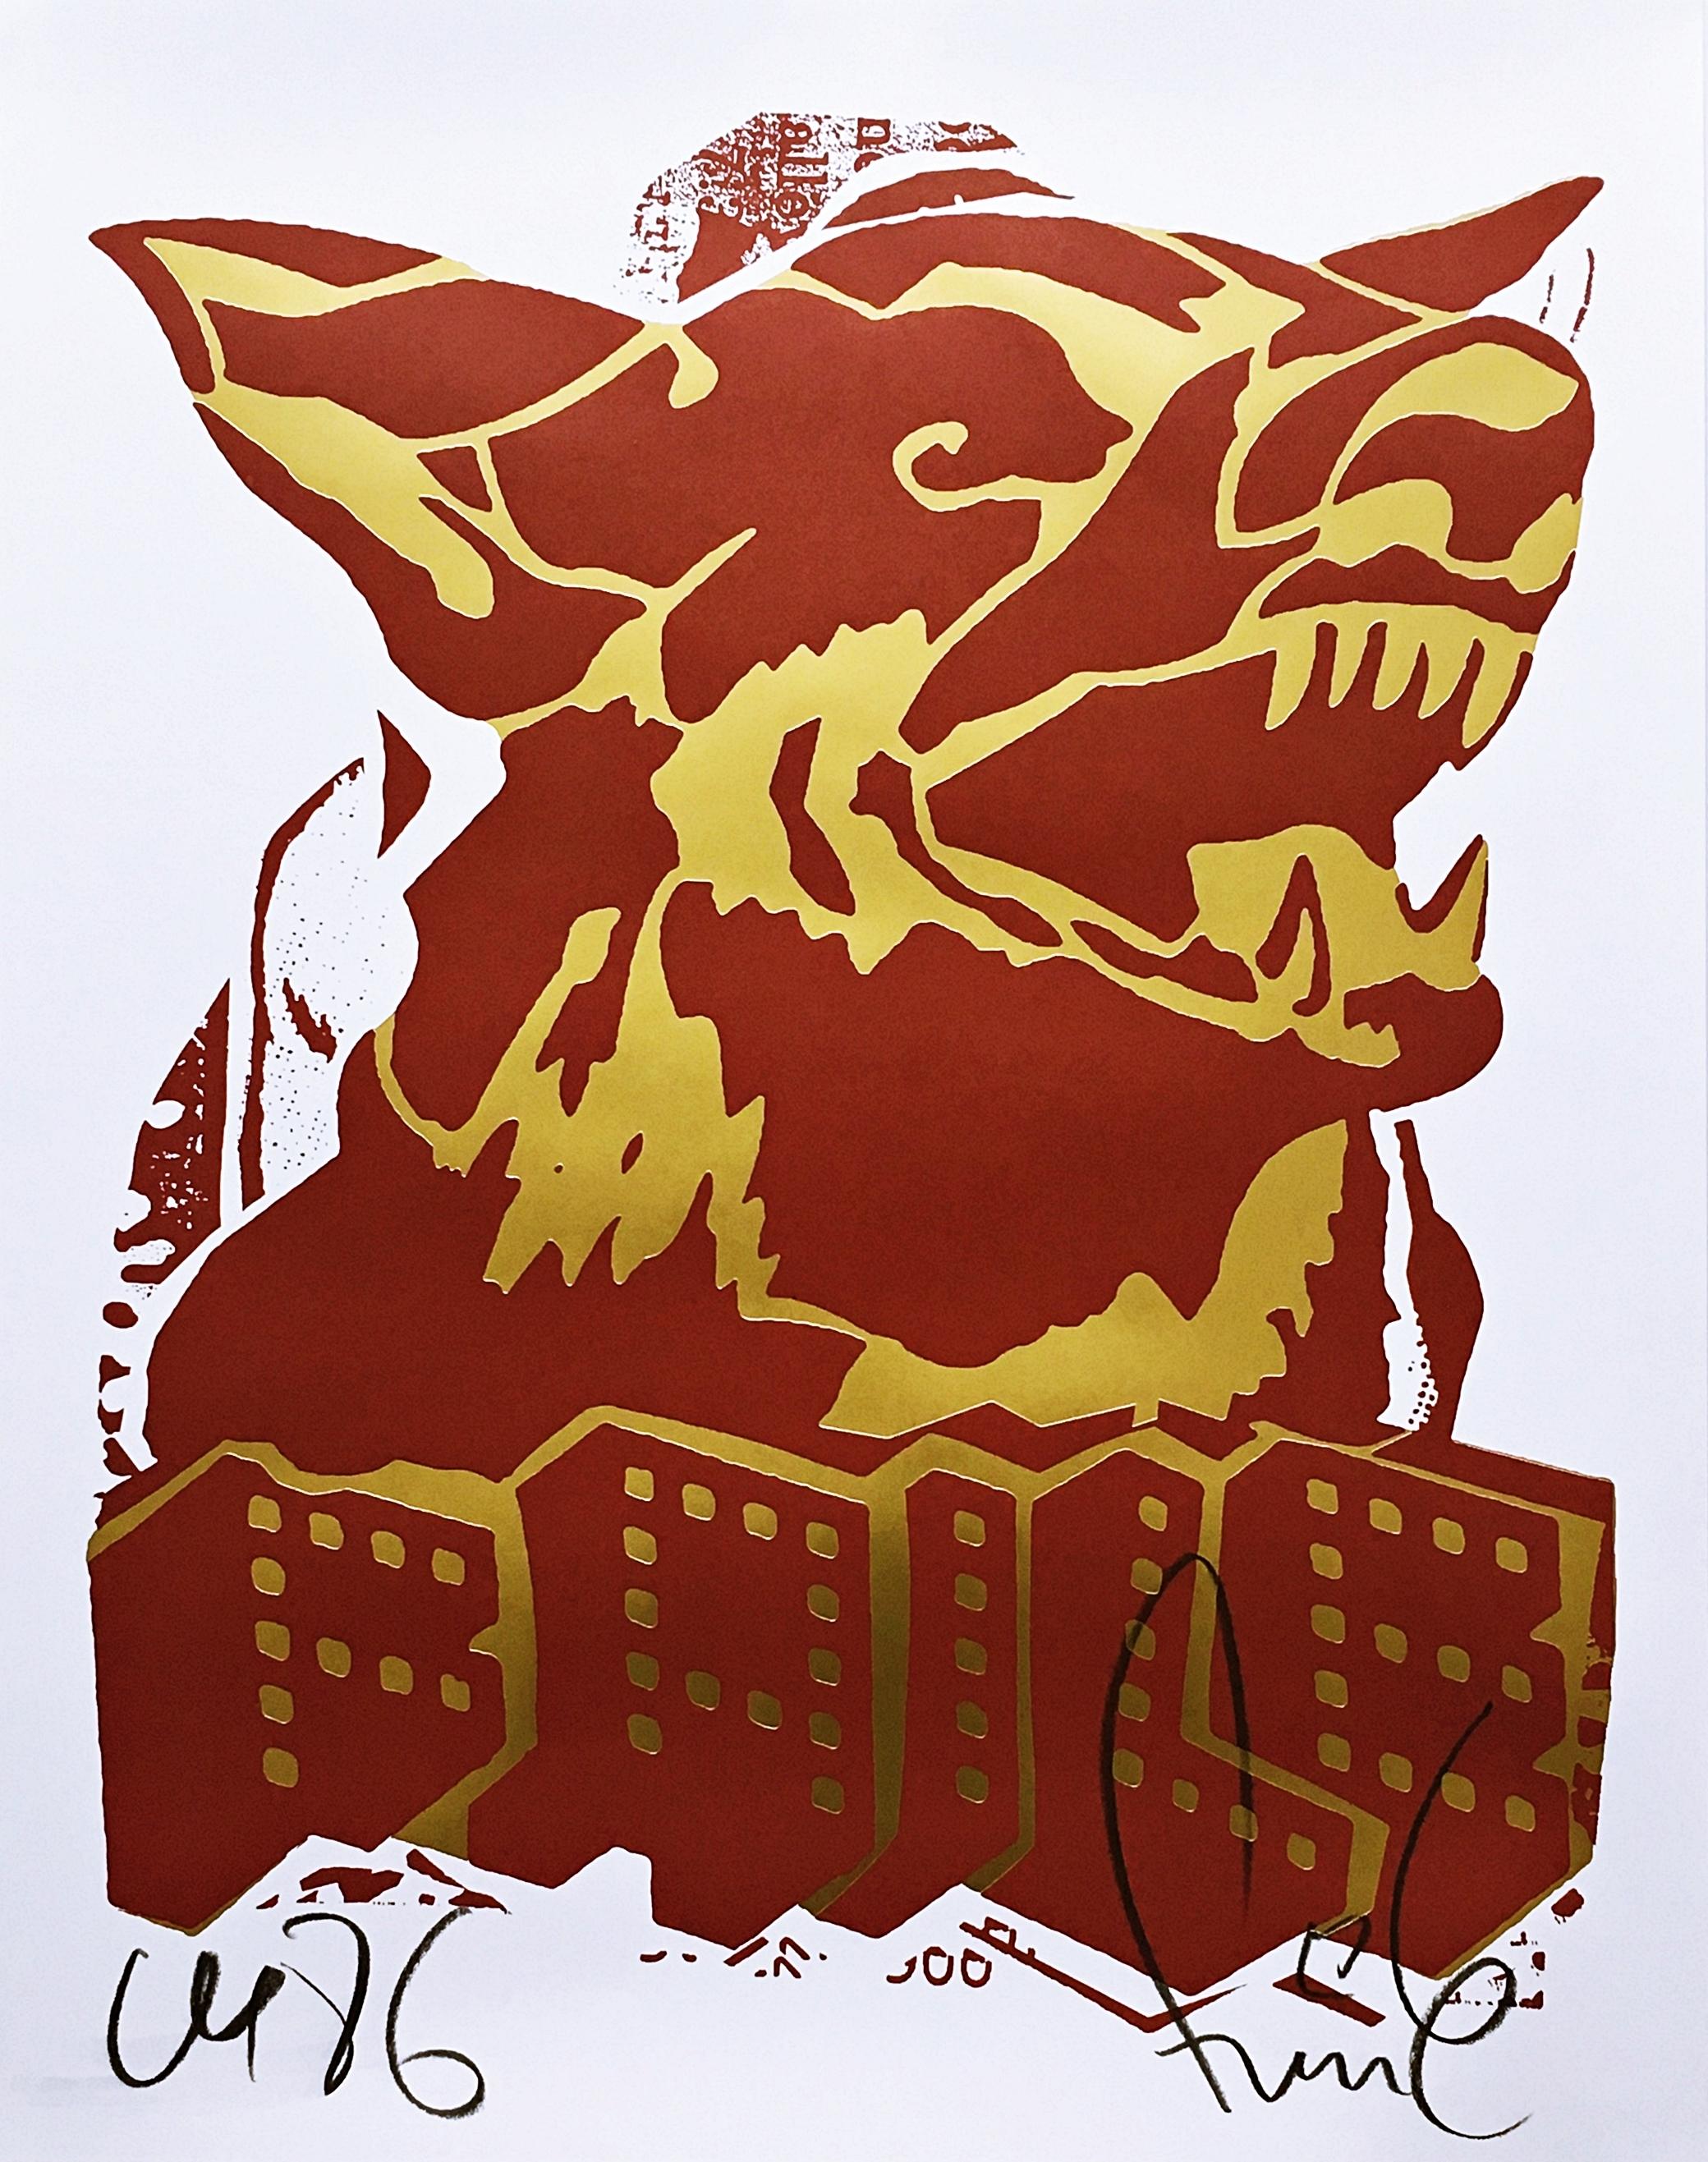 Le chien rouge (impression à l'édition limitée avec feuille d'or) par de célèbres artistes pop art de la rue  - Print de Faile